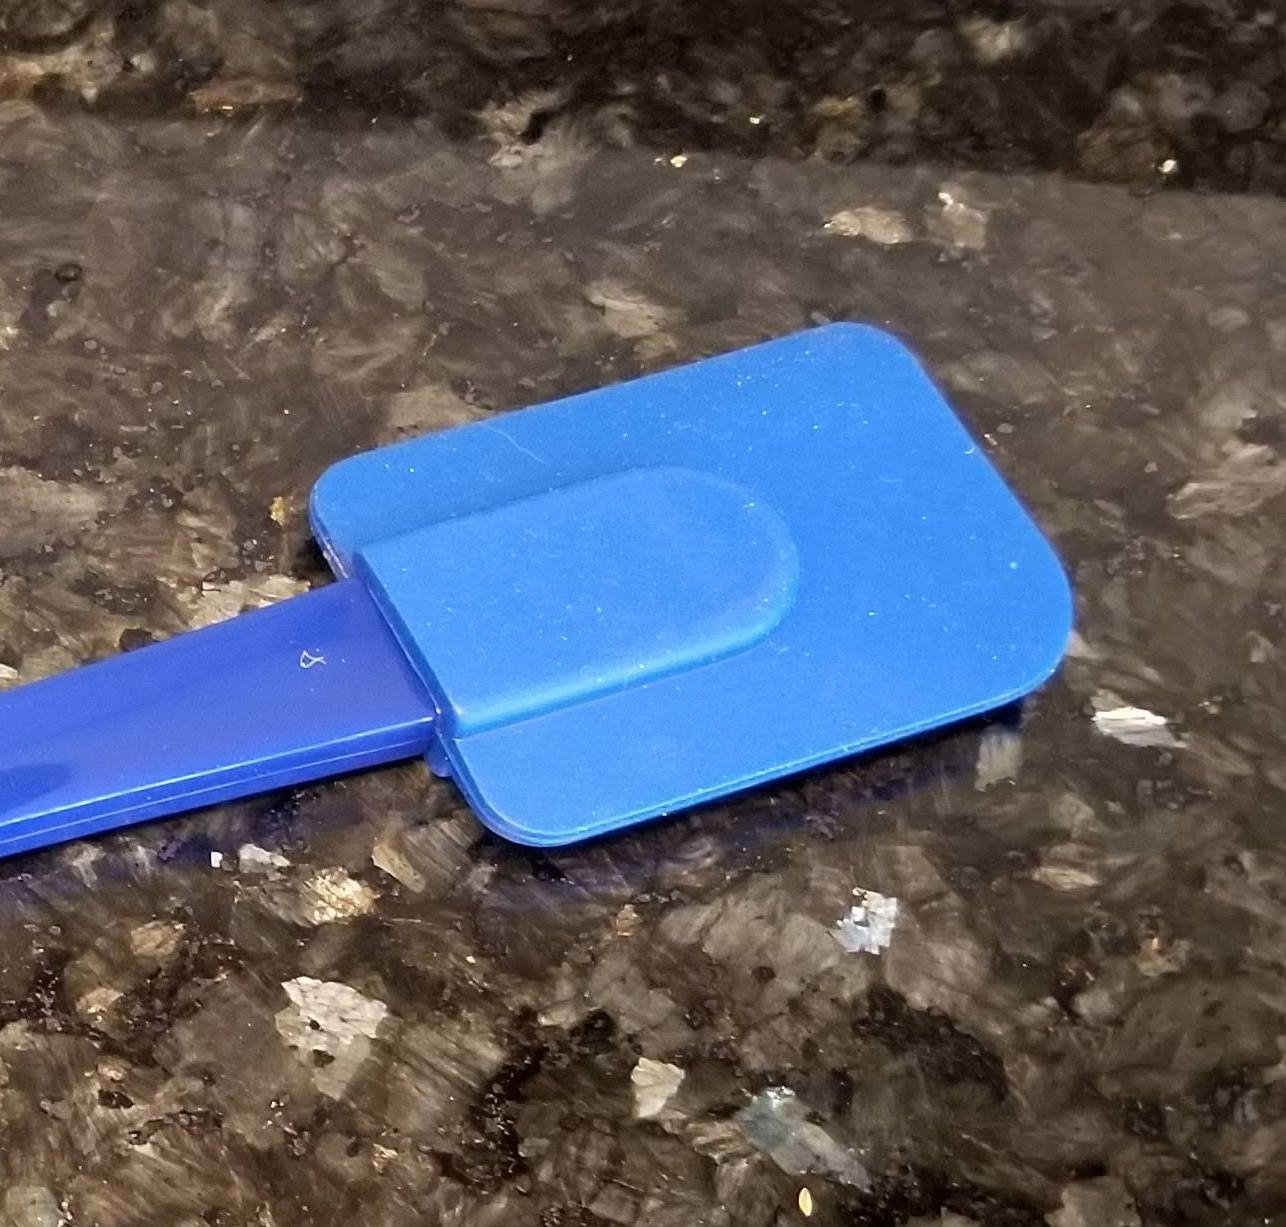 Handy Housewares 10 Double Sided Non-Stick Silicone Scraper Spatula - Blue